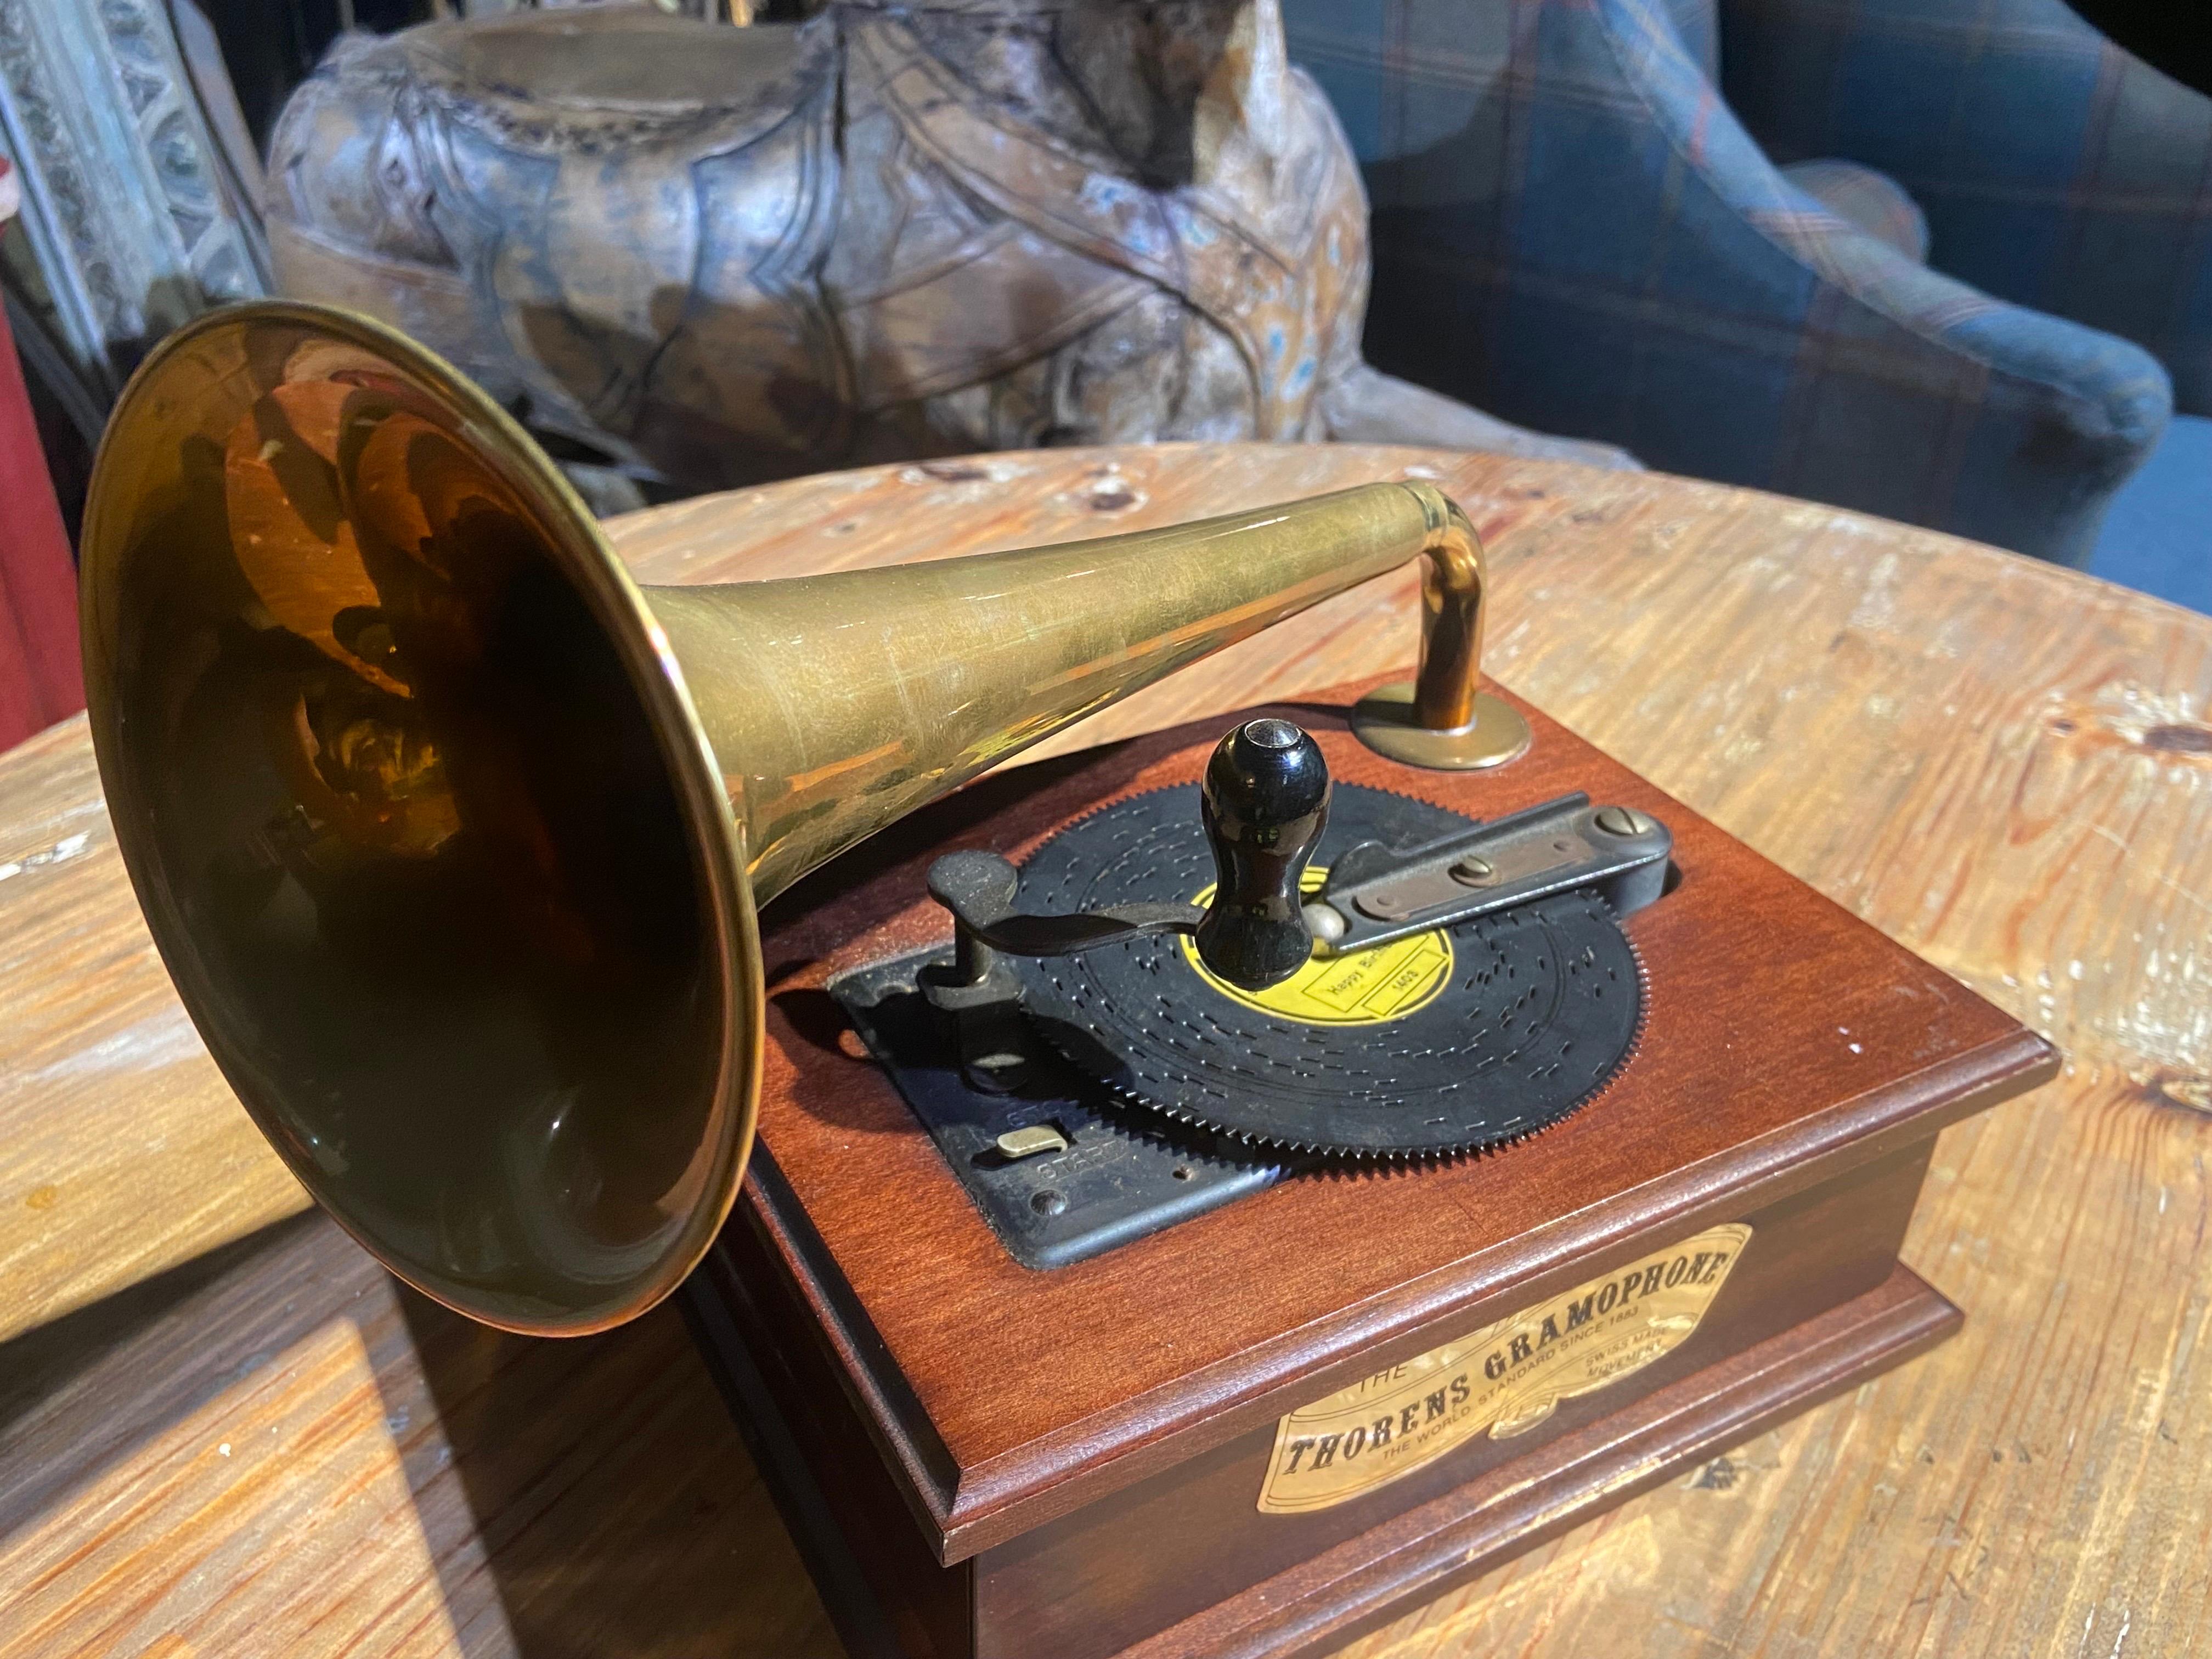 thorens gramophone music box